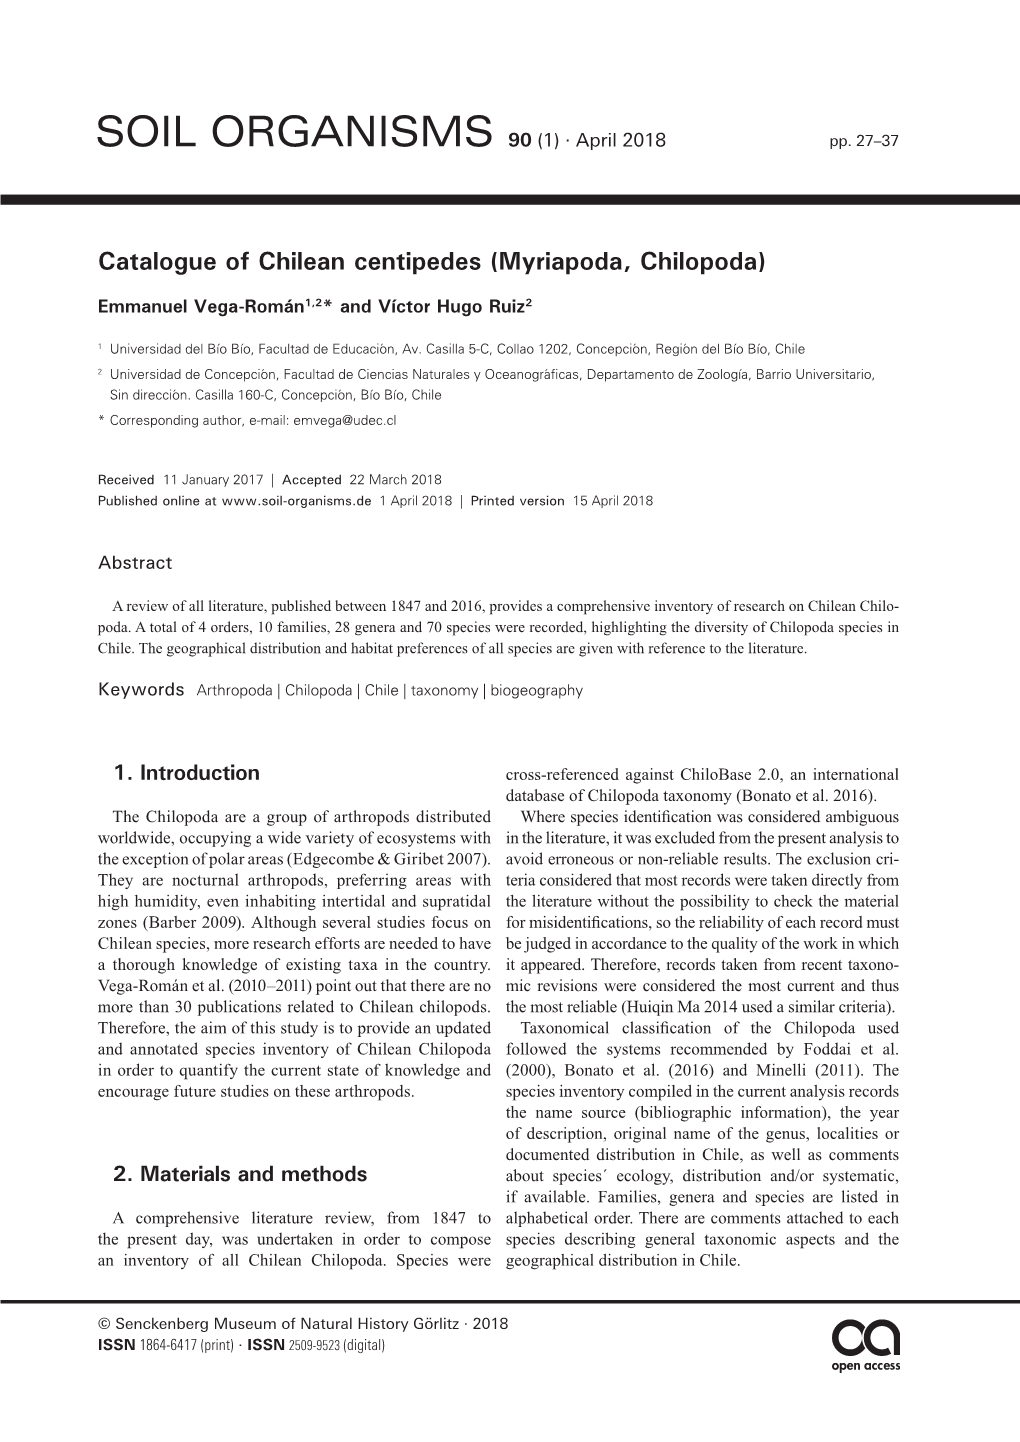 Catalogue of Chilean Centipedes (Myriapoda, Chilopoda)